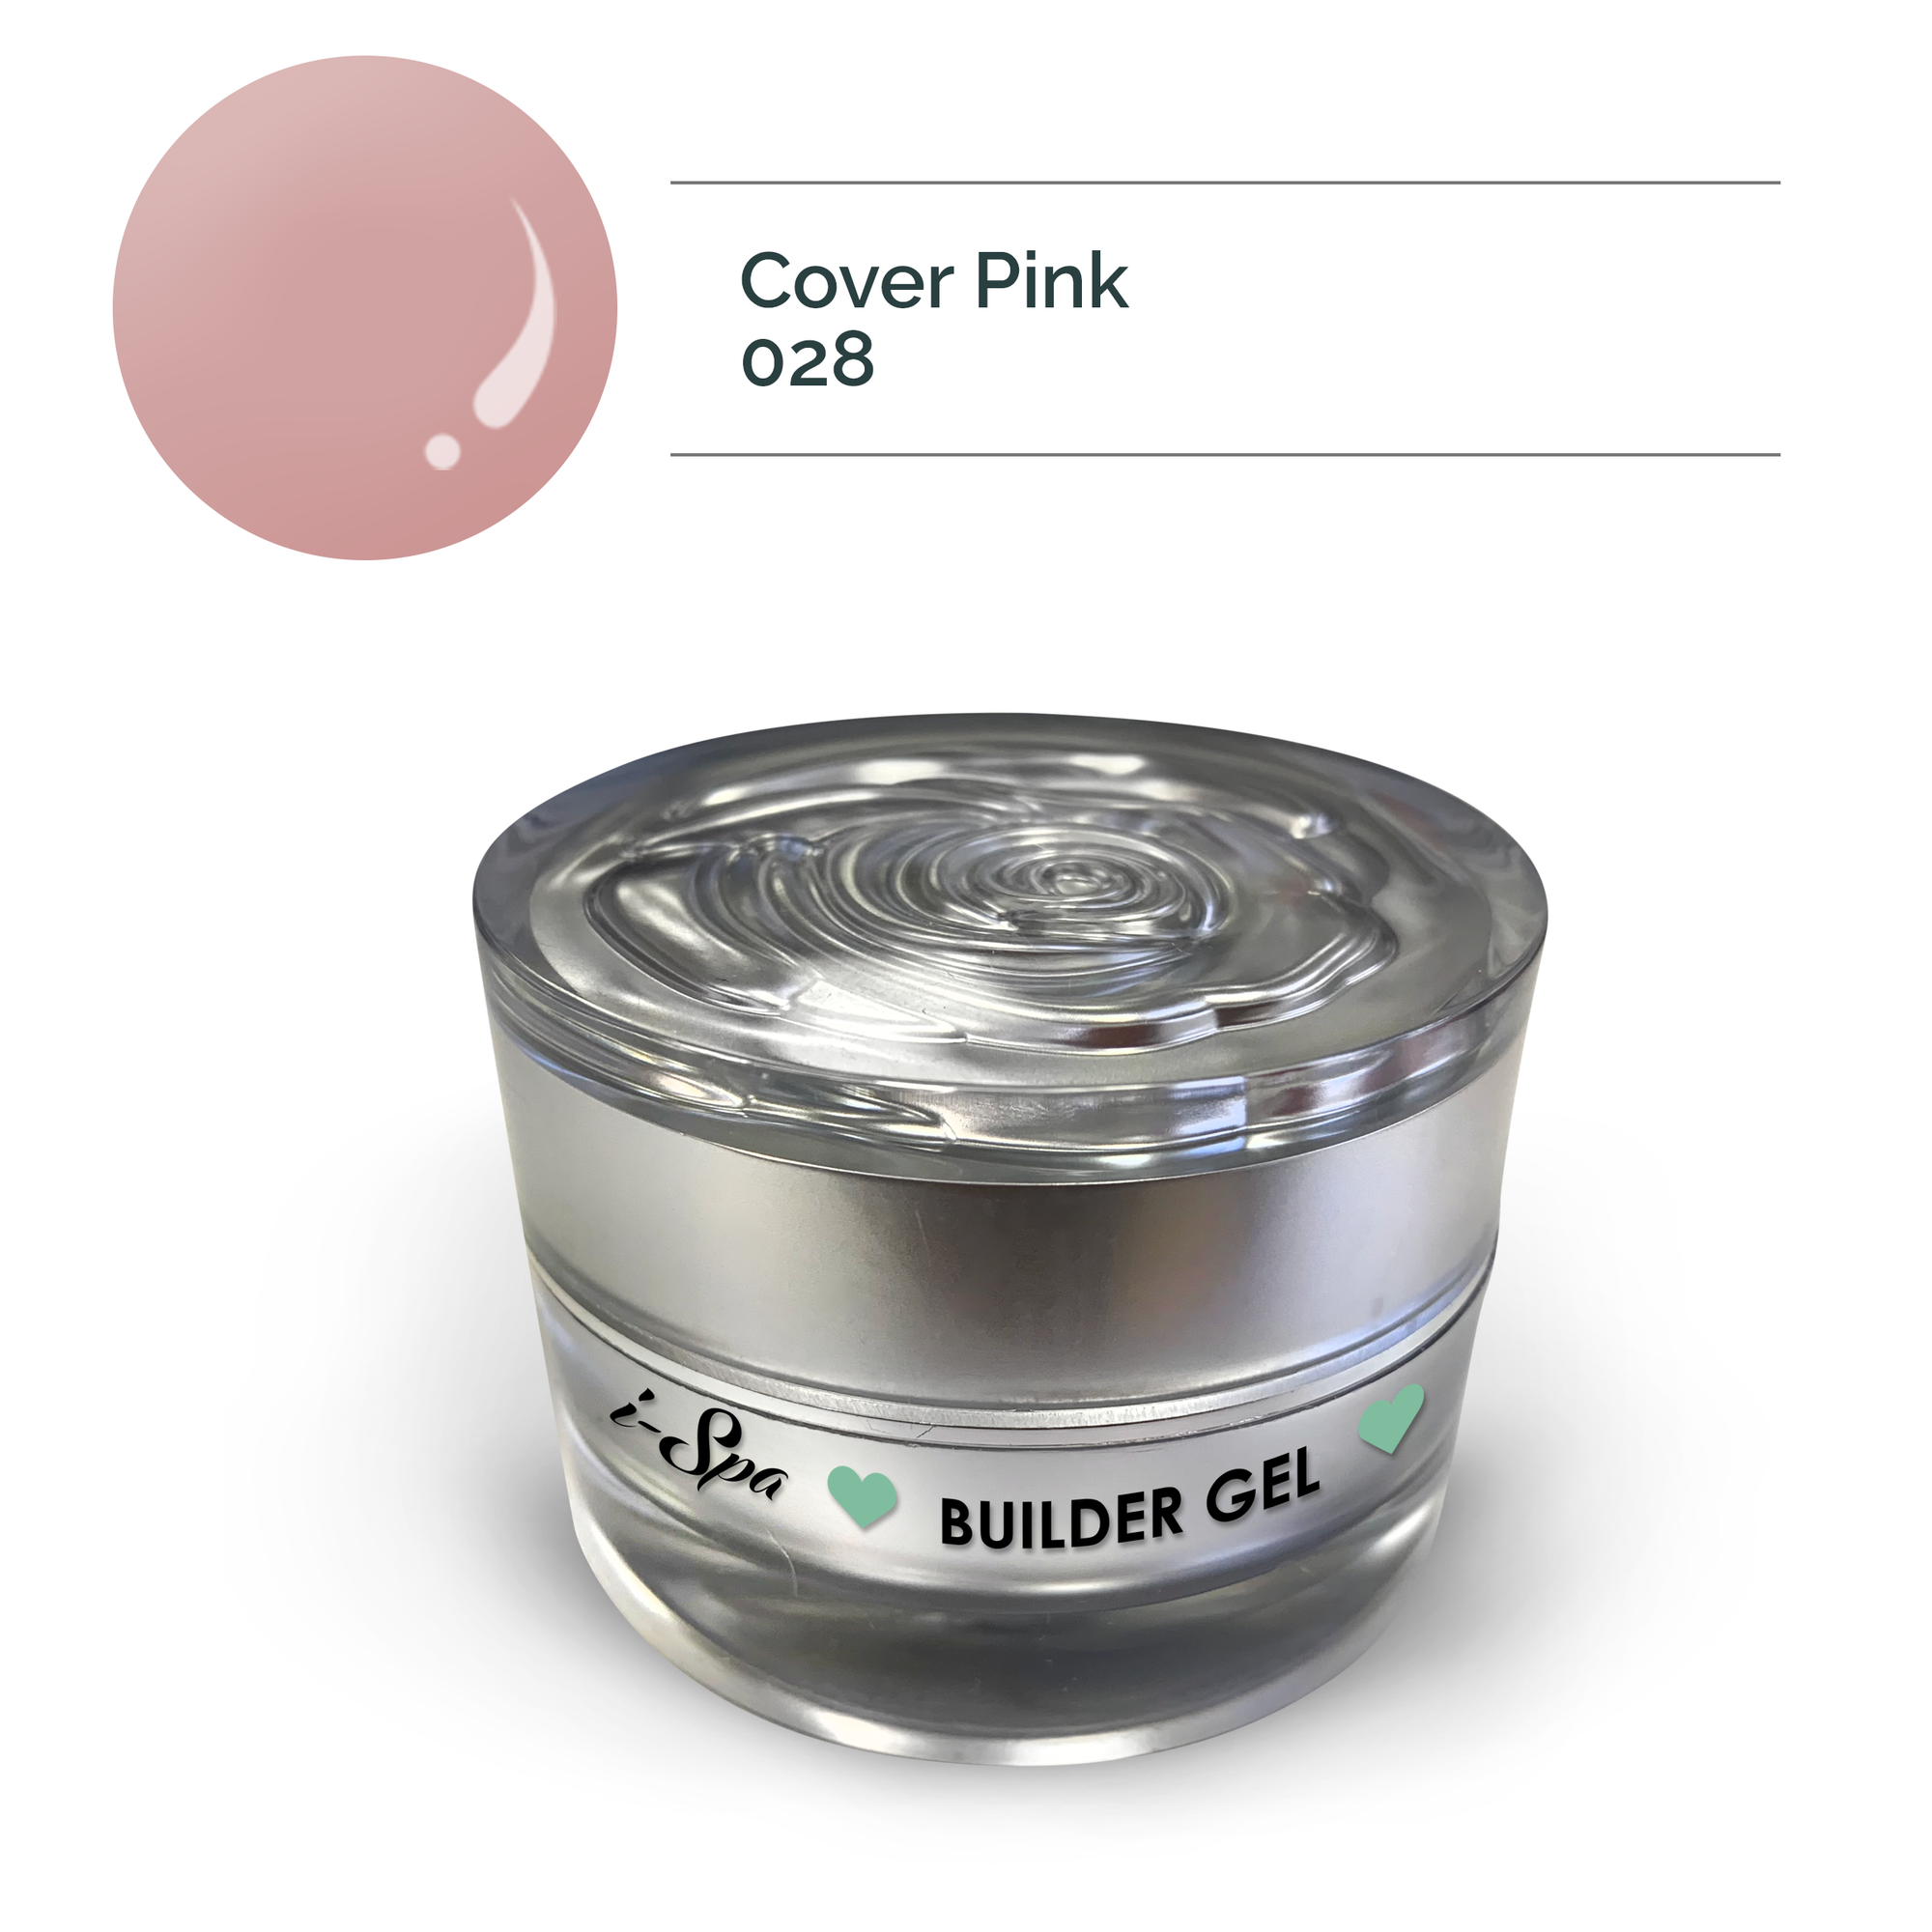 Builder Gel - Cover Pink 028 | 20g